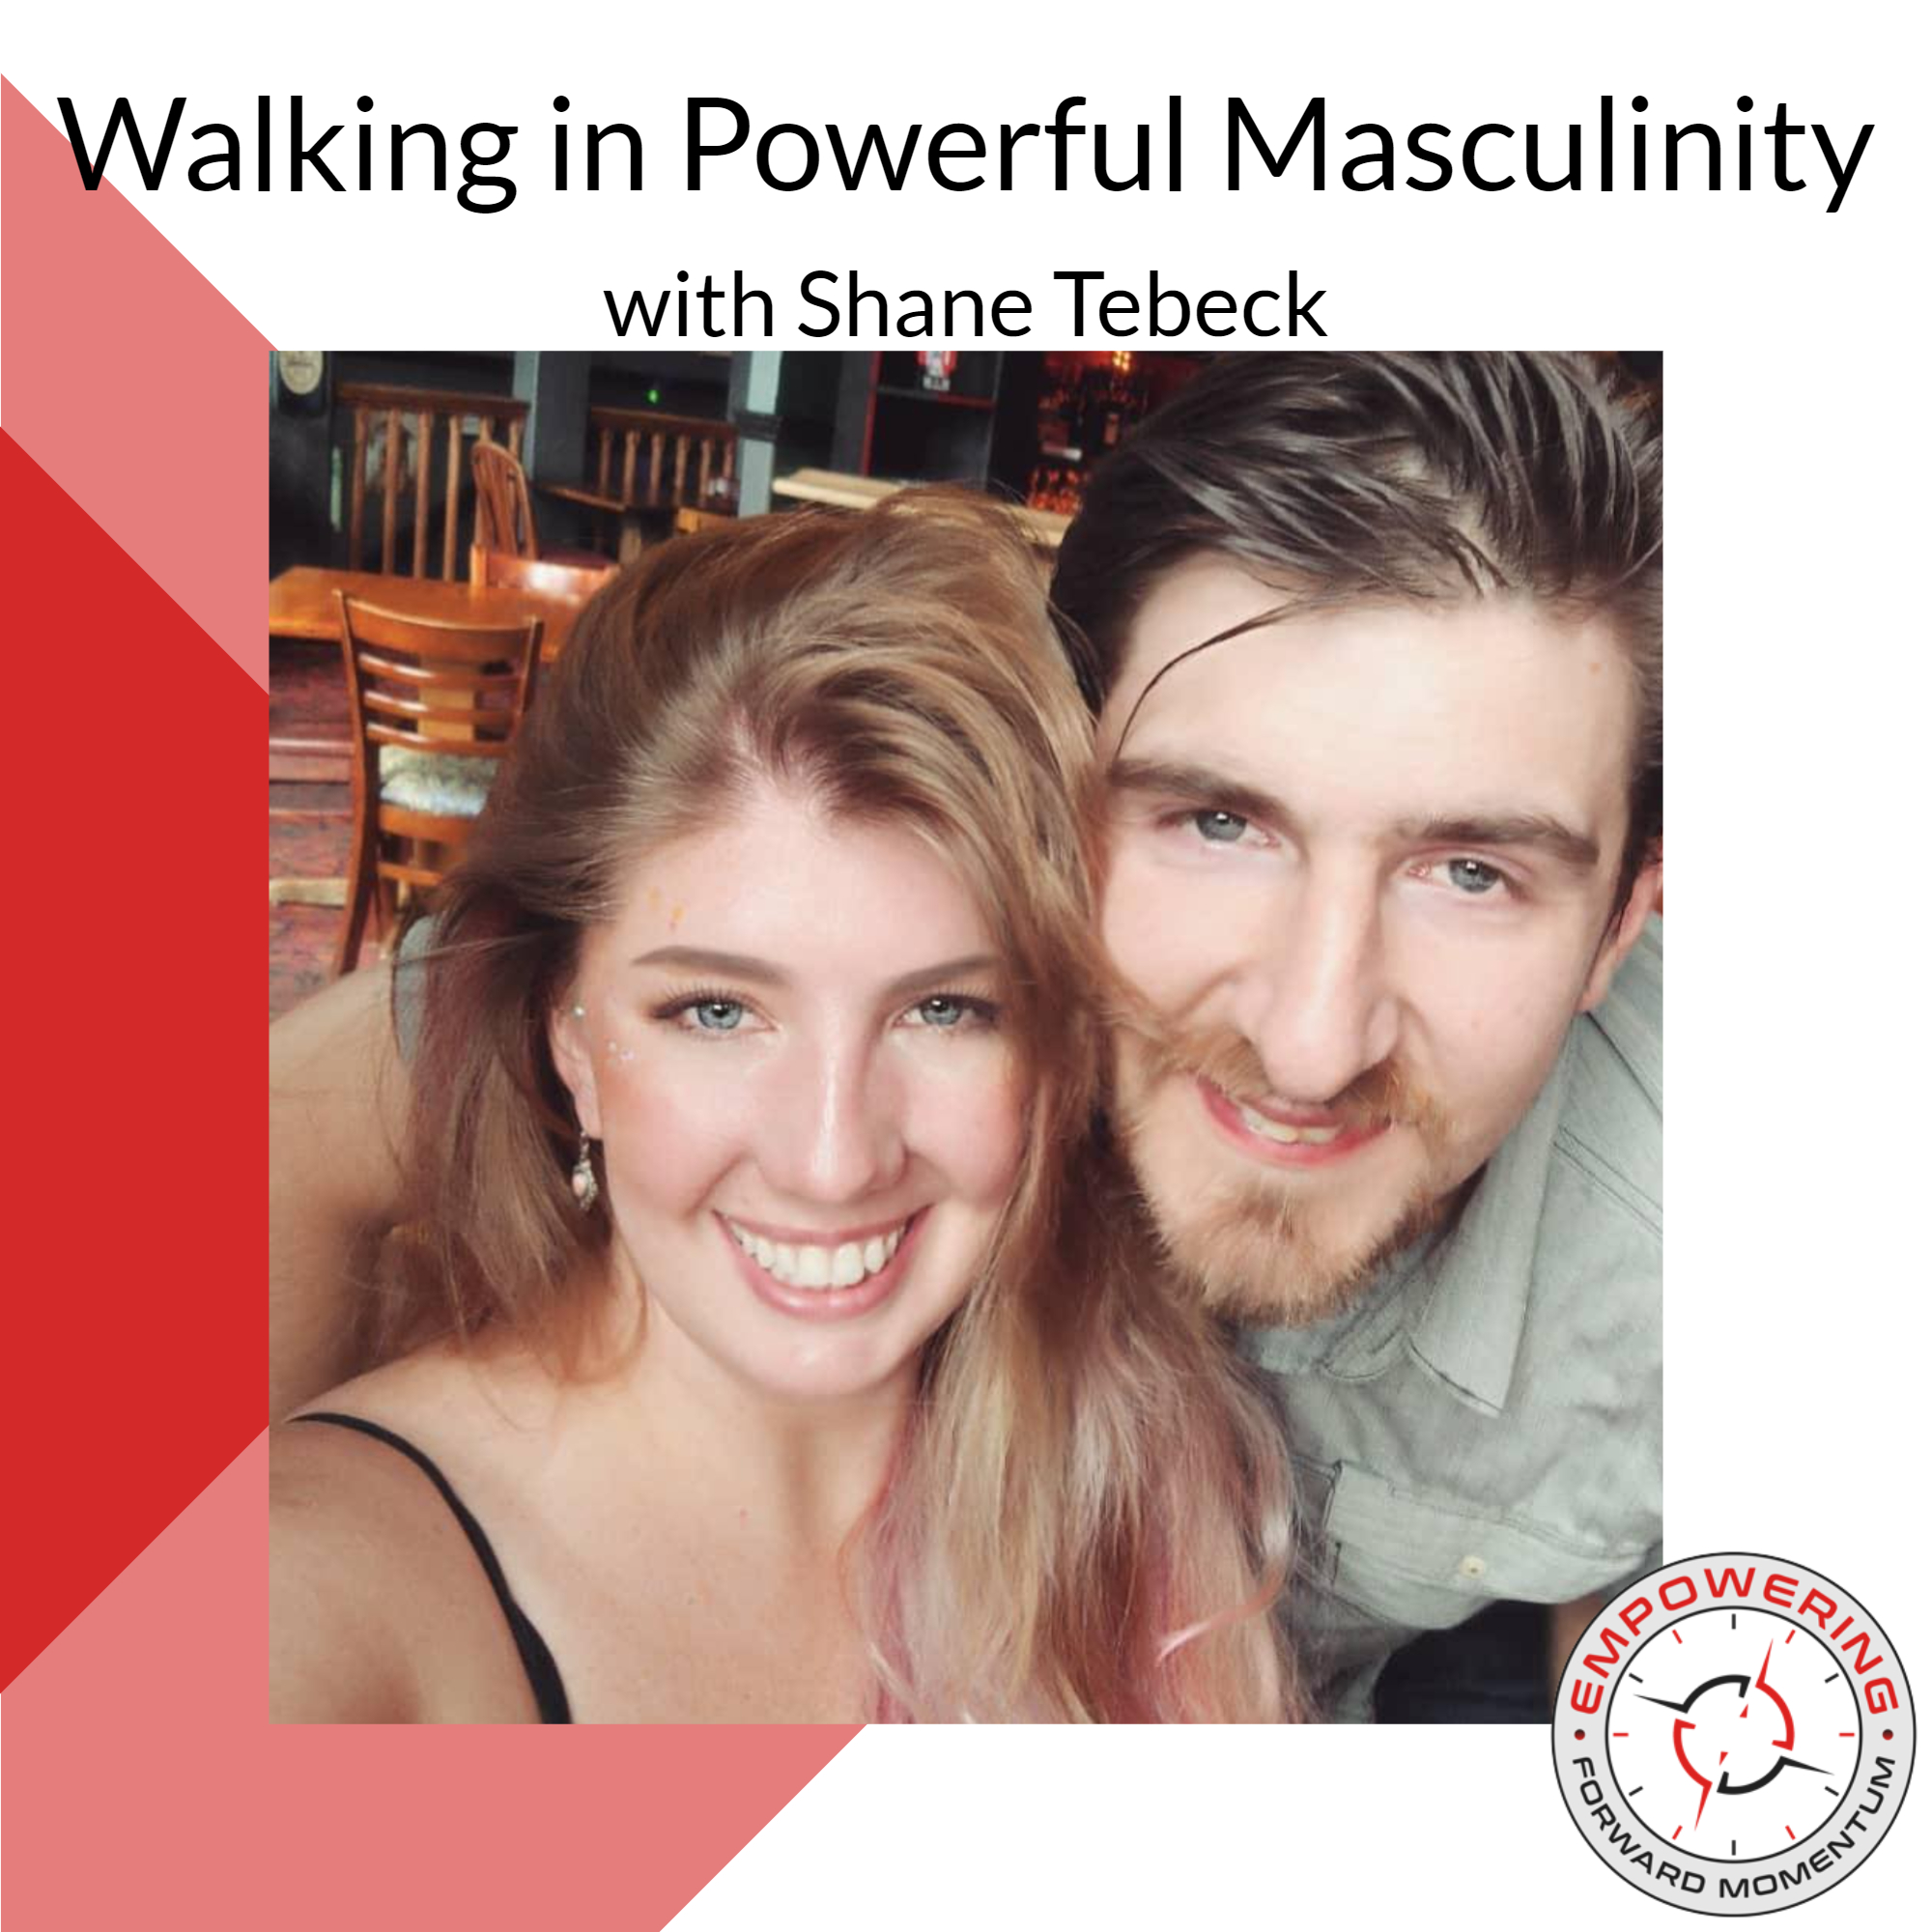 Walking in Powerful Masculinity